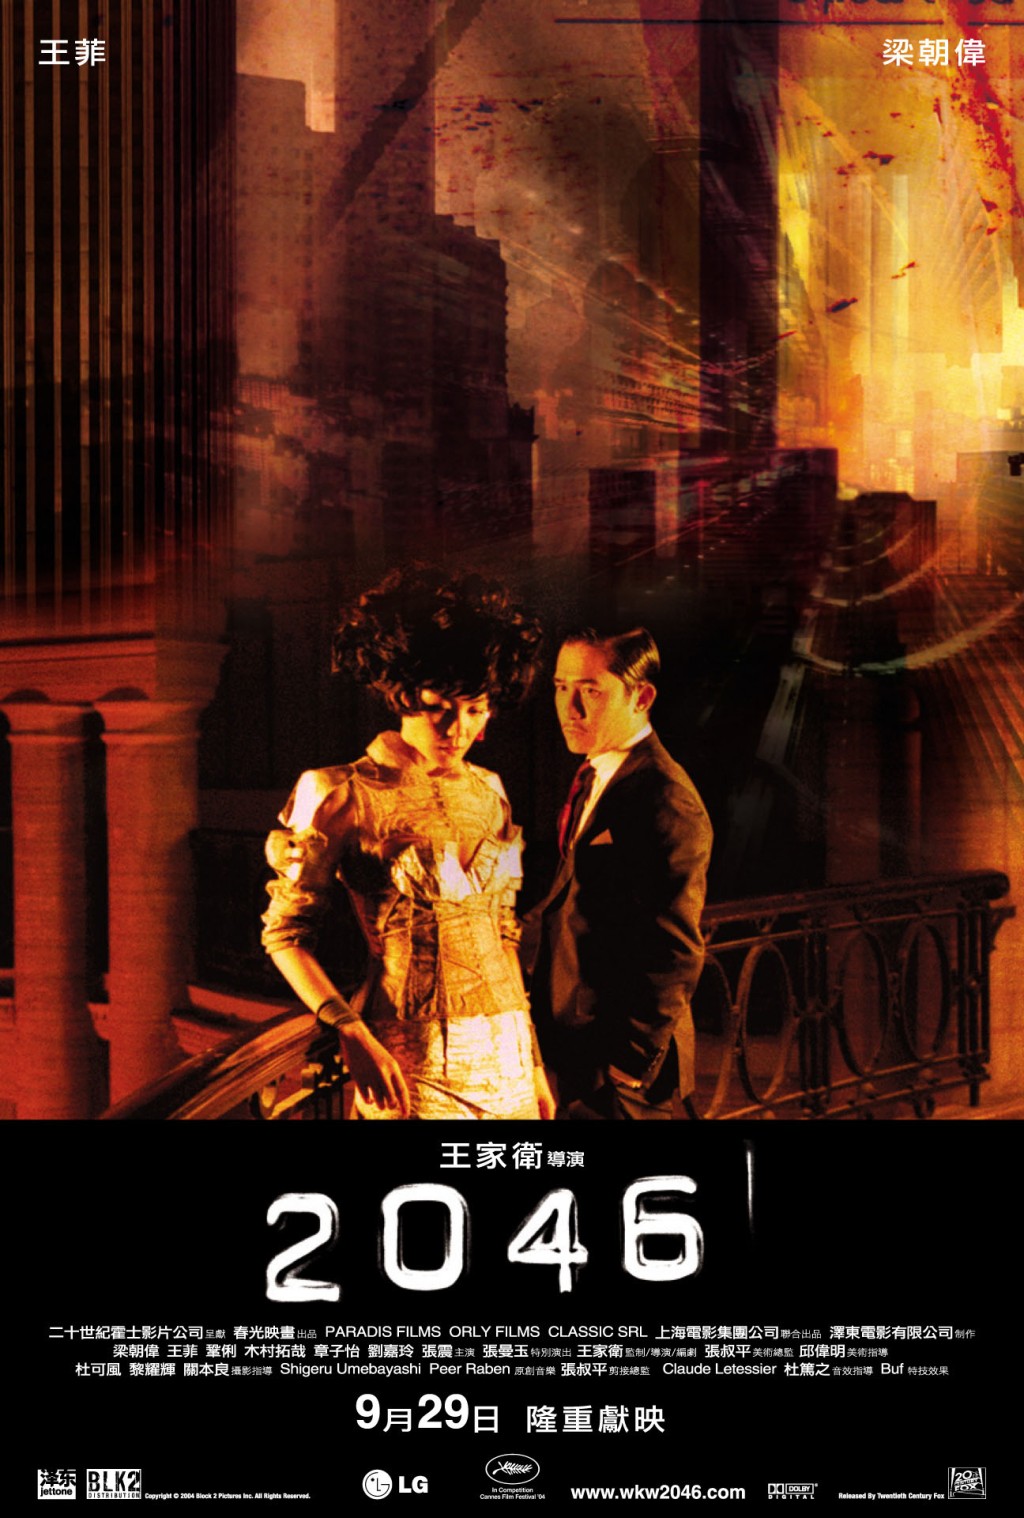 2005年凭《2046》的周慕云第五次封帝，同时夺得金紫荆奖、香港电影评论学会大奖。